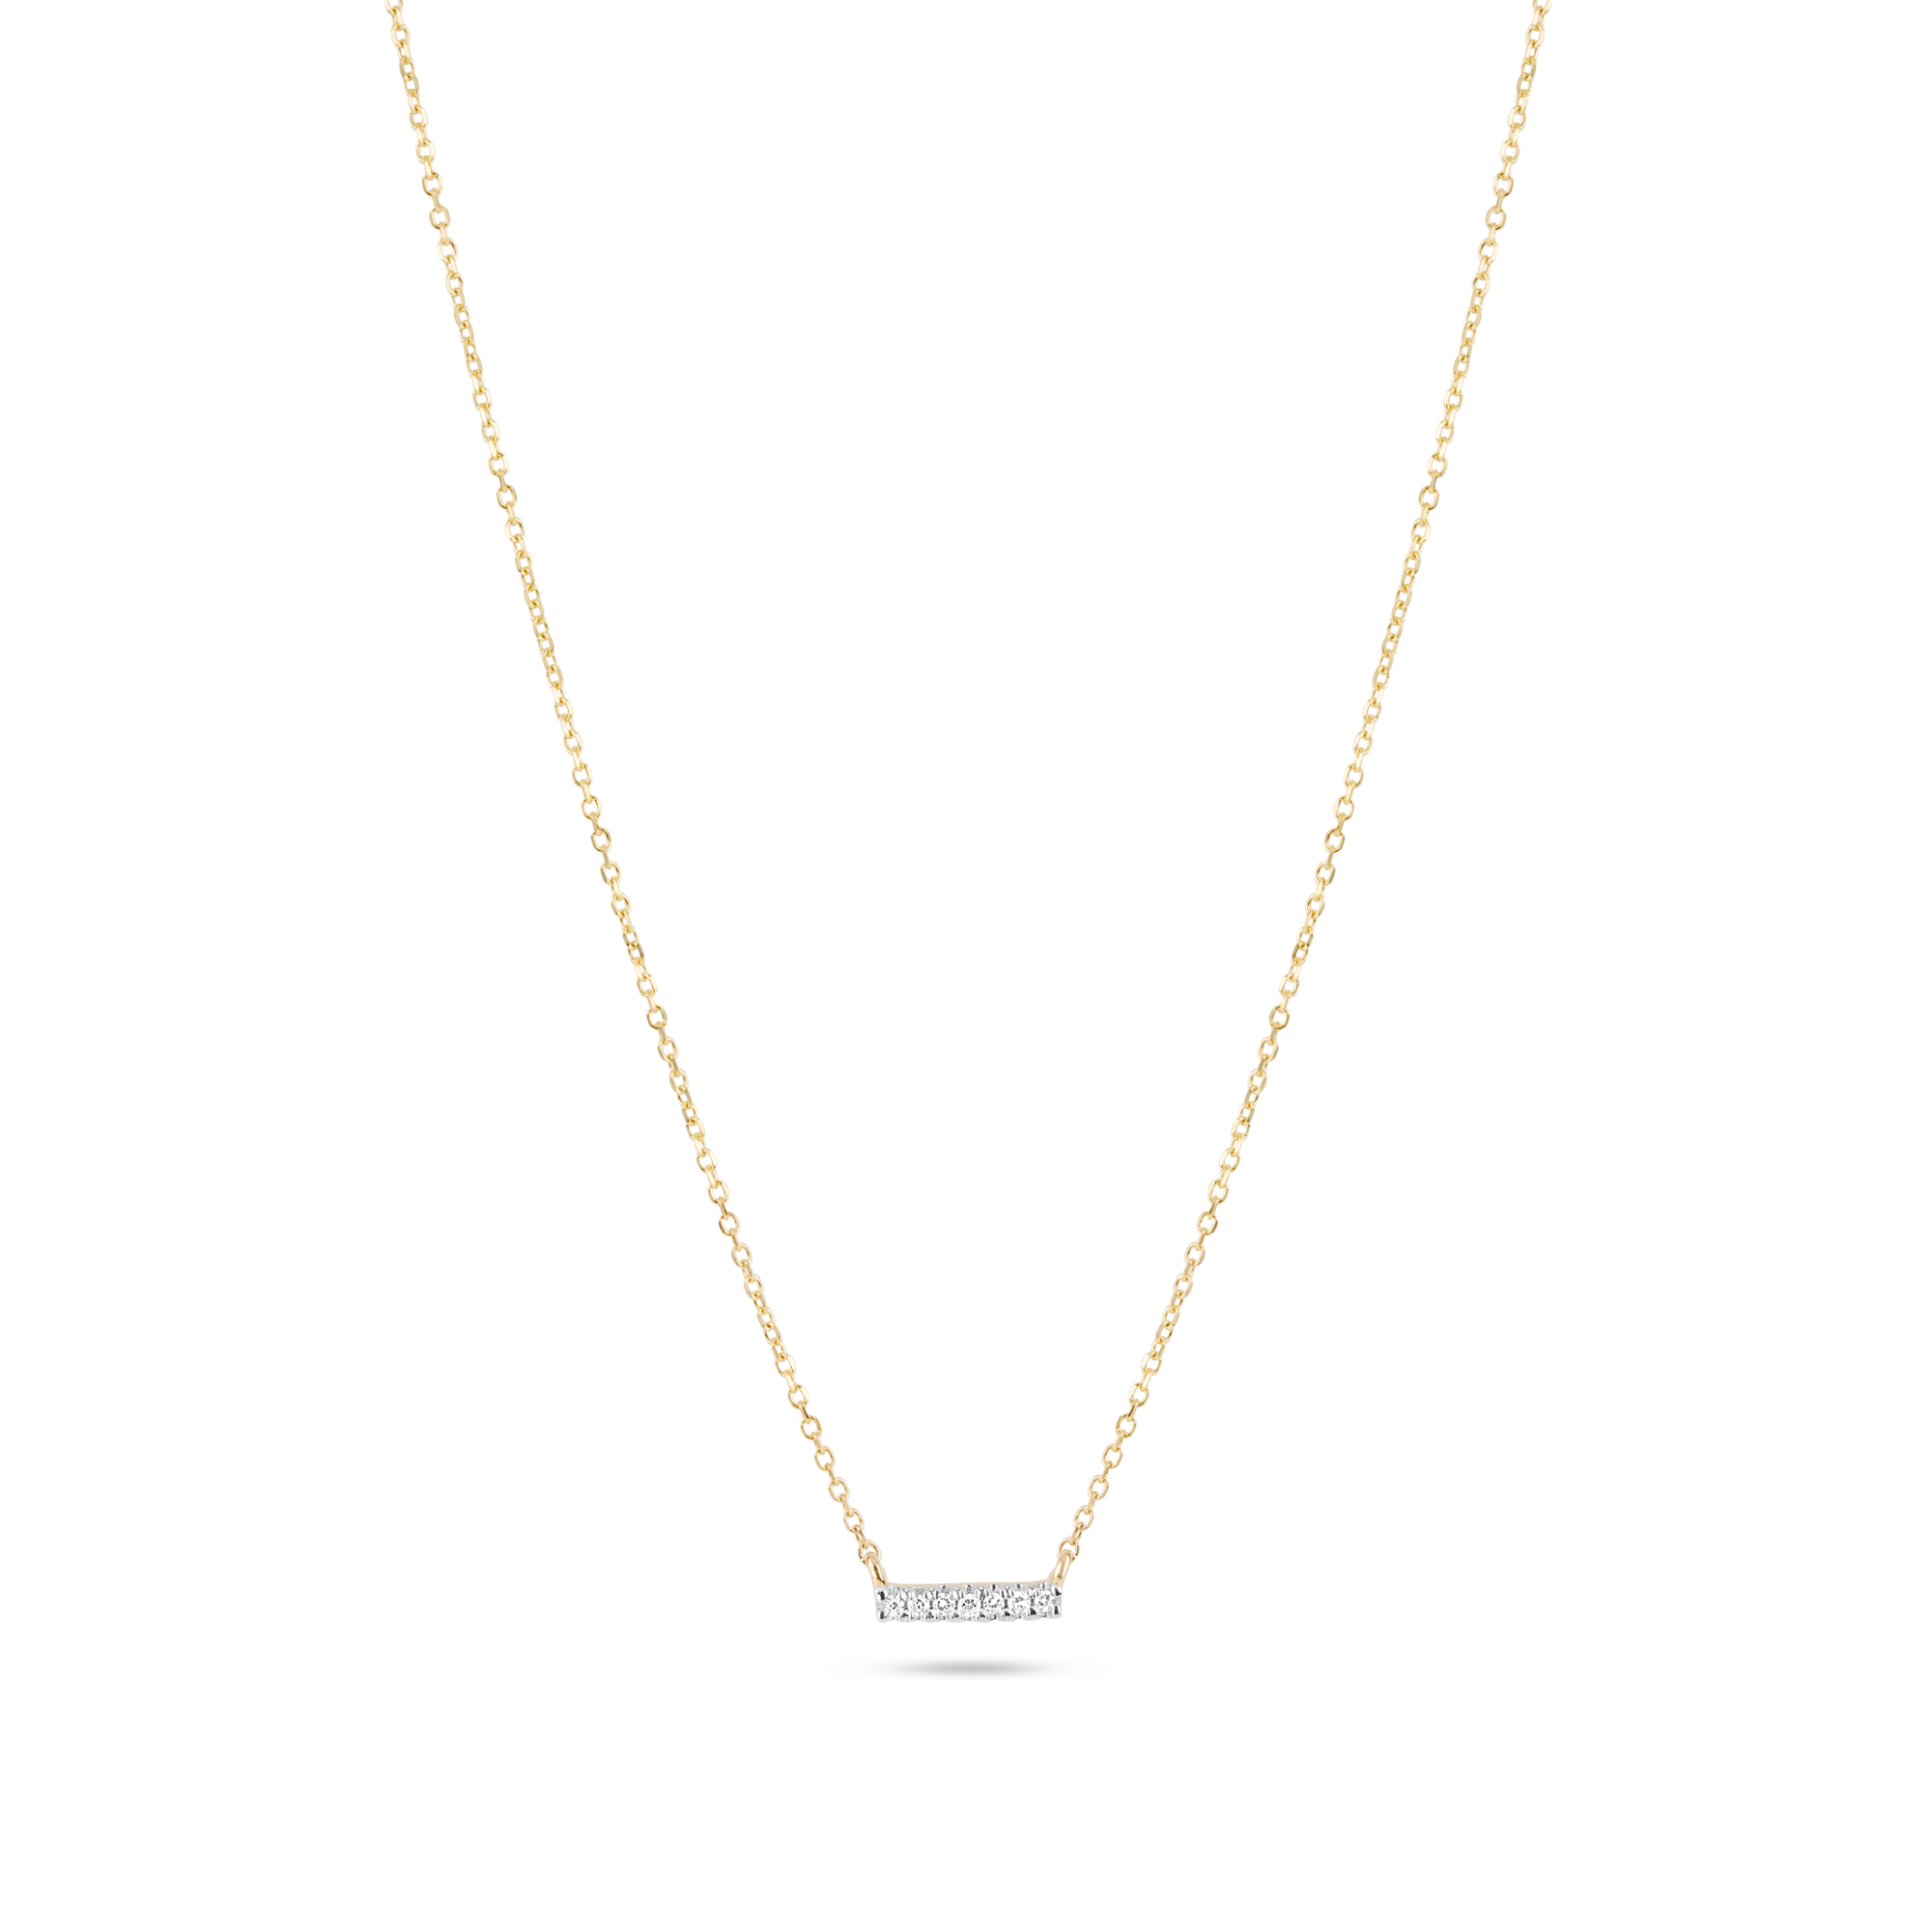 Details about   Pave Diamond bar necklace 